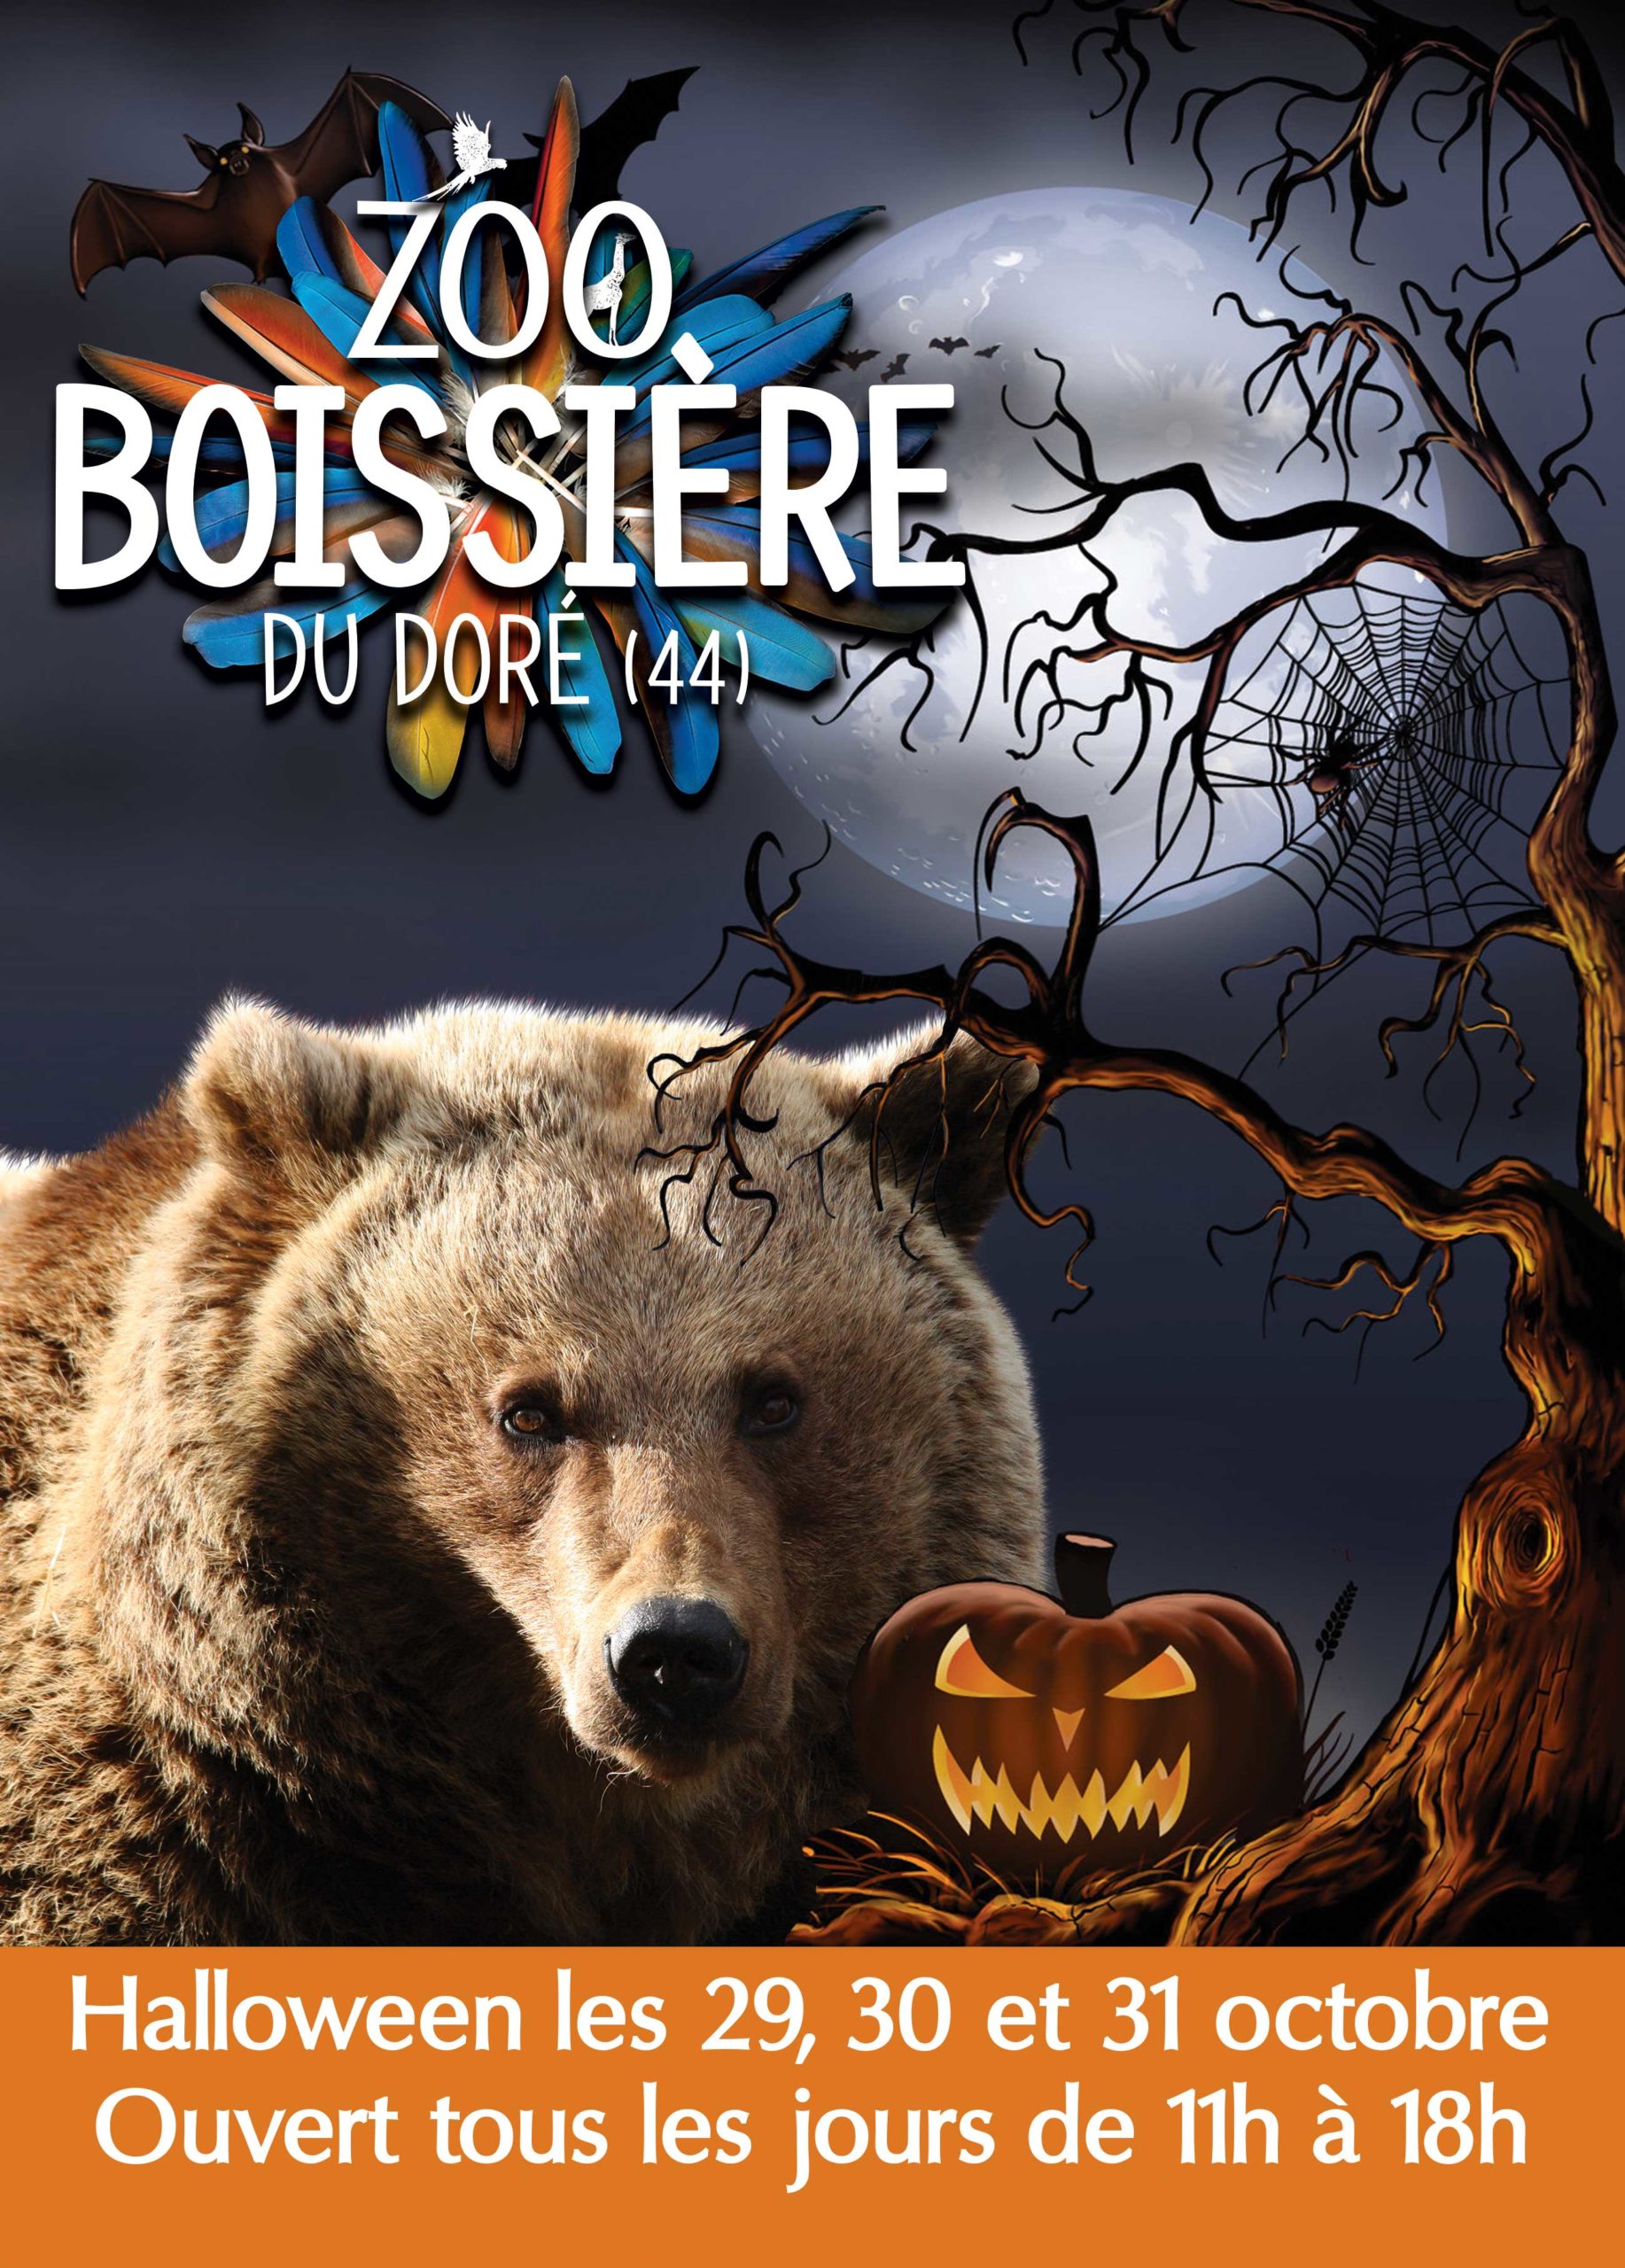 Zoo de la Boissière du Doré - Halloween